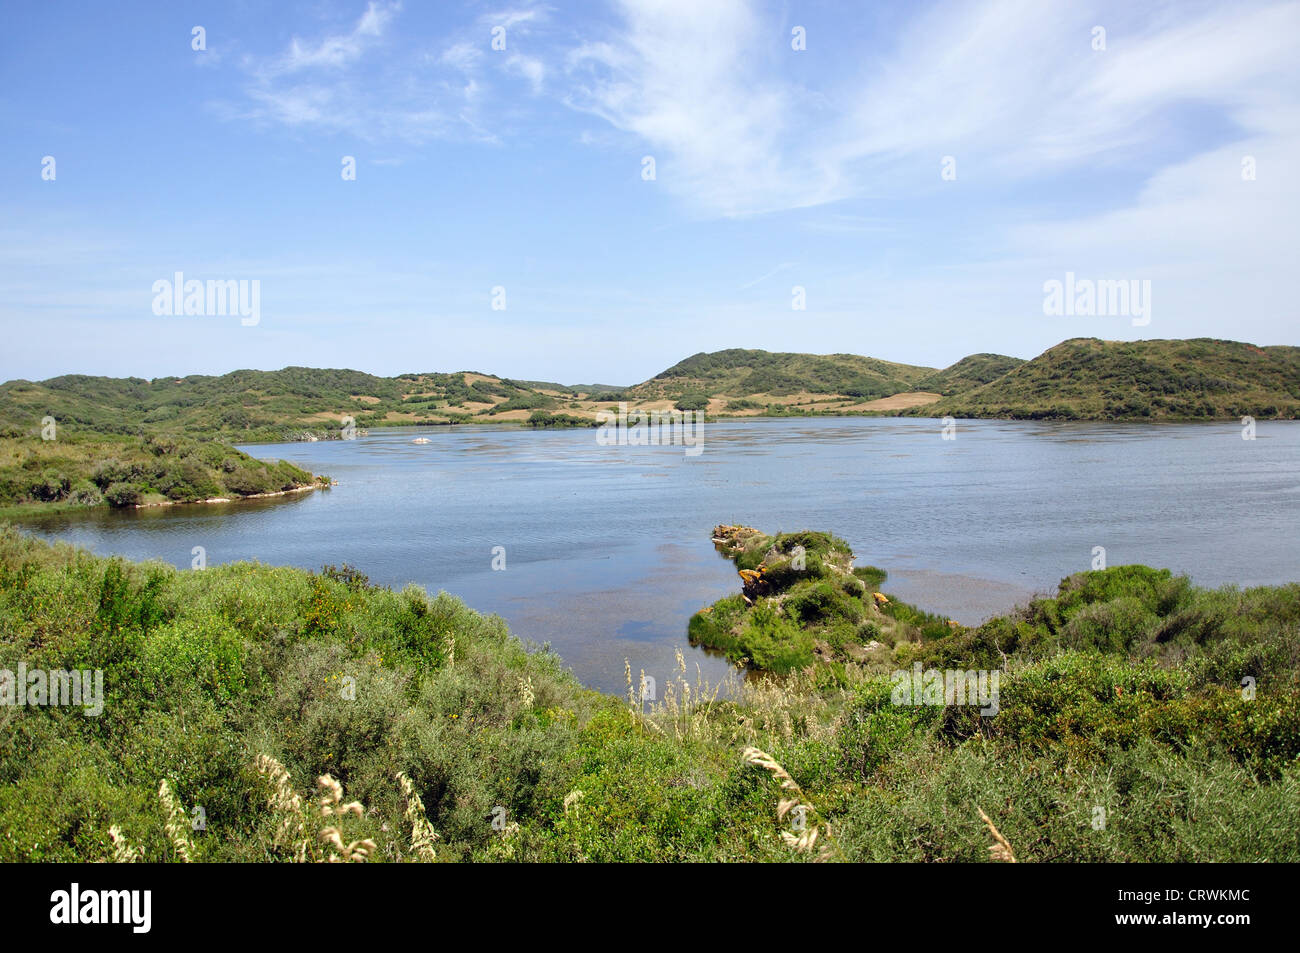 Parc natural de s'Albufera des Grau, Menorca, Balearic Islands, Spain Stock Photo